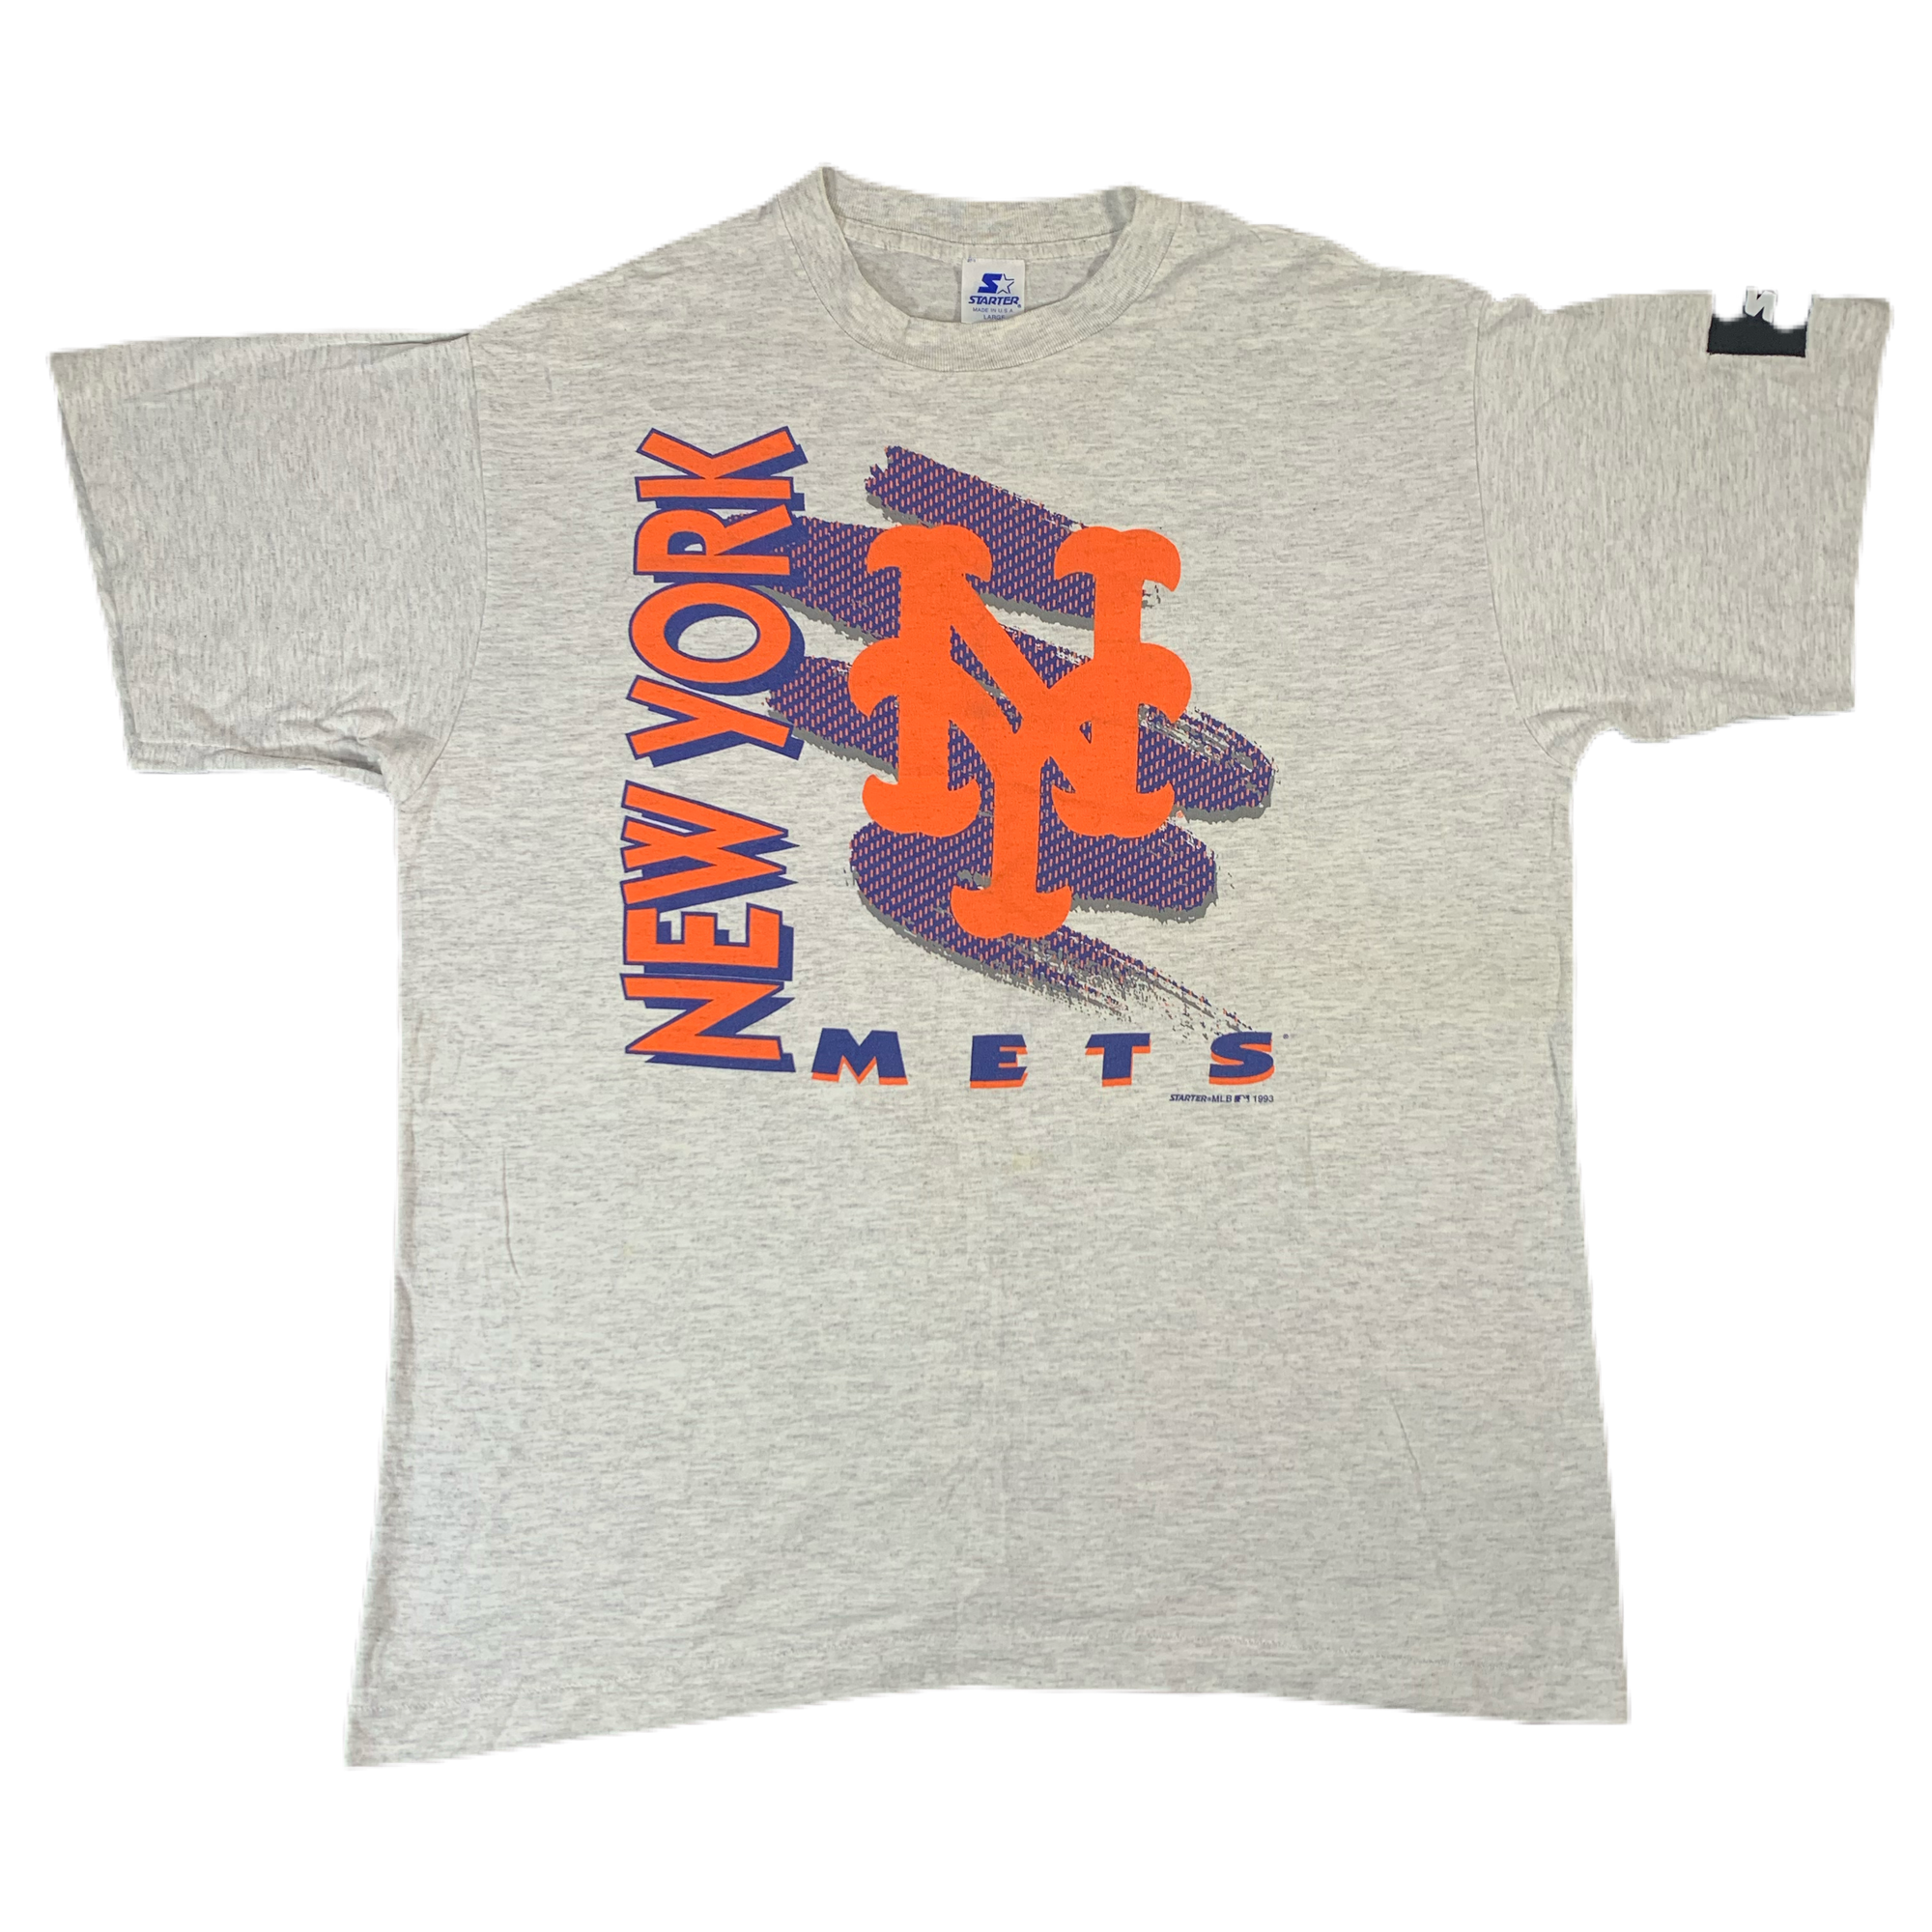 Vintage New York Mets "Starter" T-Shirt - jointcustodydc